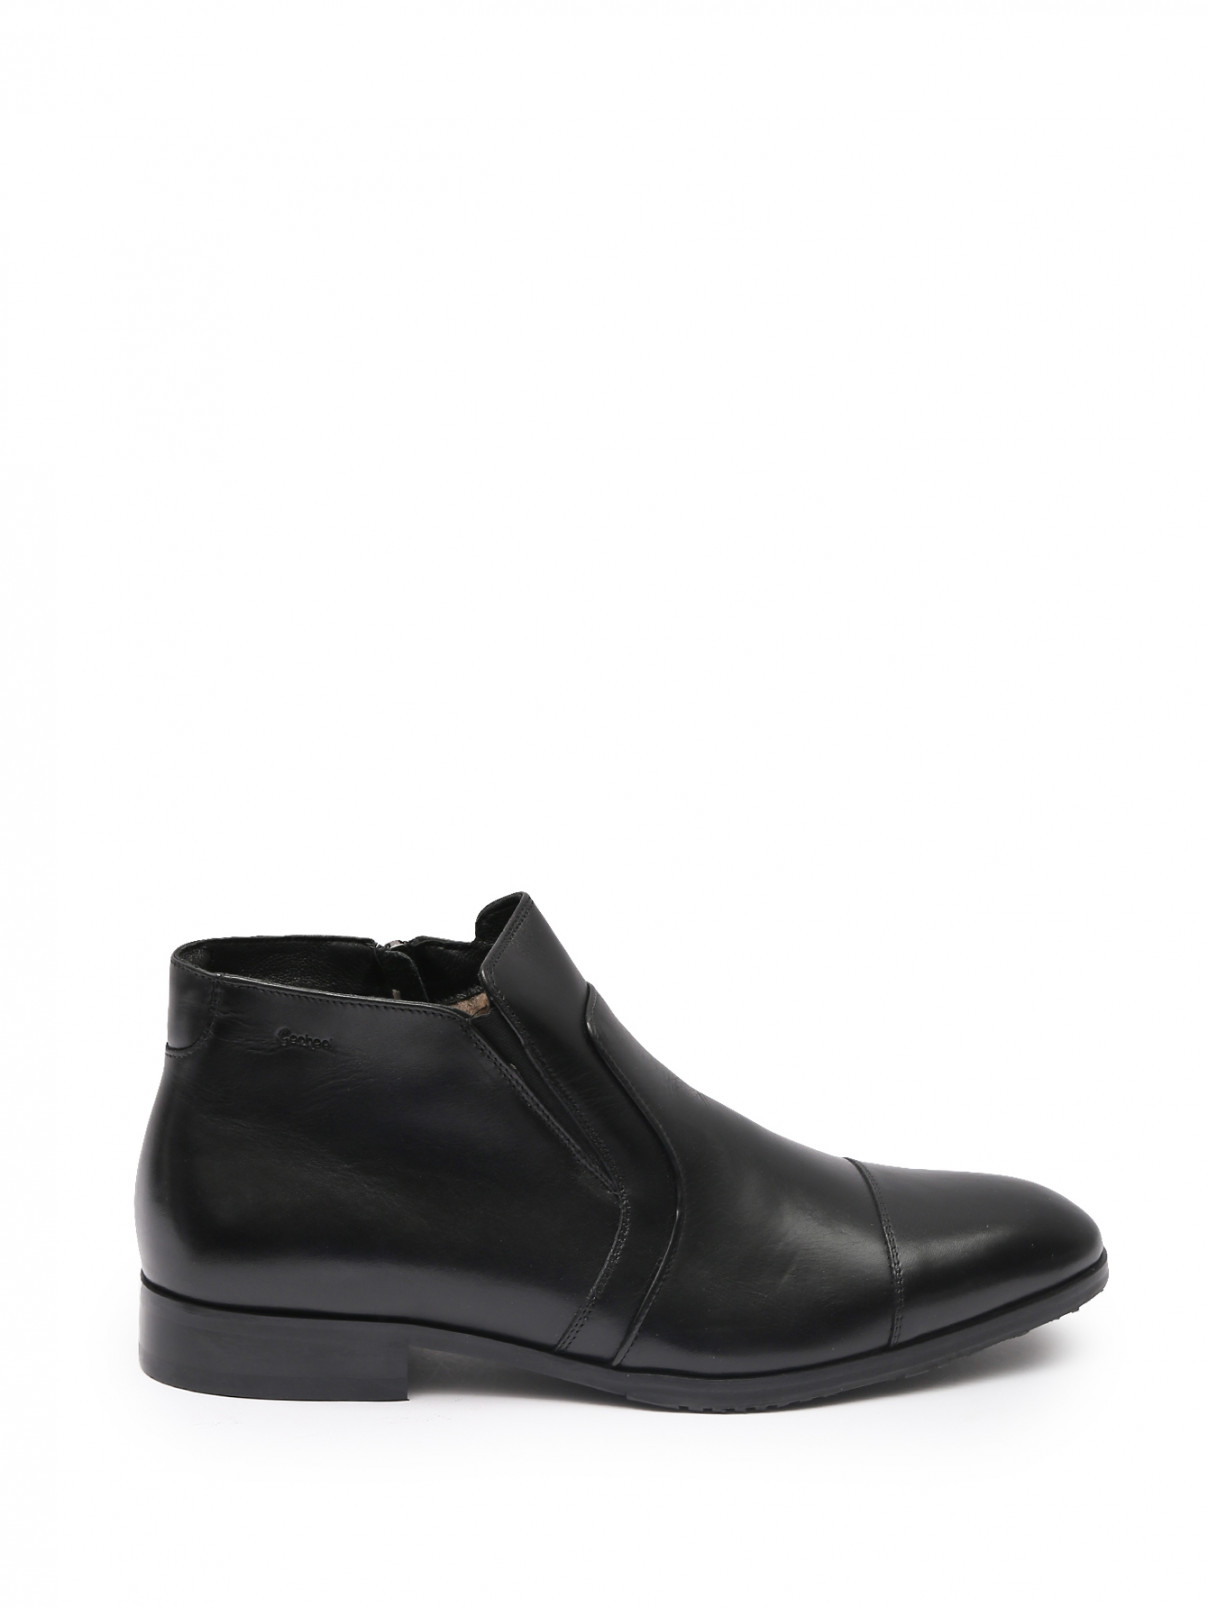 Кожаные ботинки с мехом Conhpol  –  Общий вид  – Цвет:  Черный